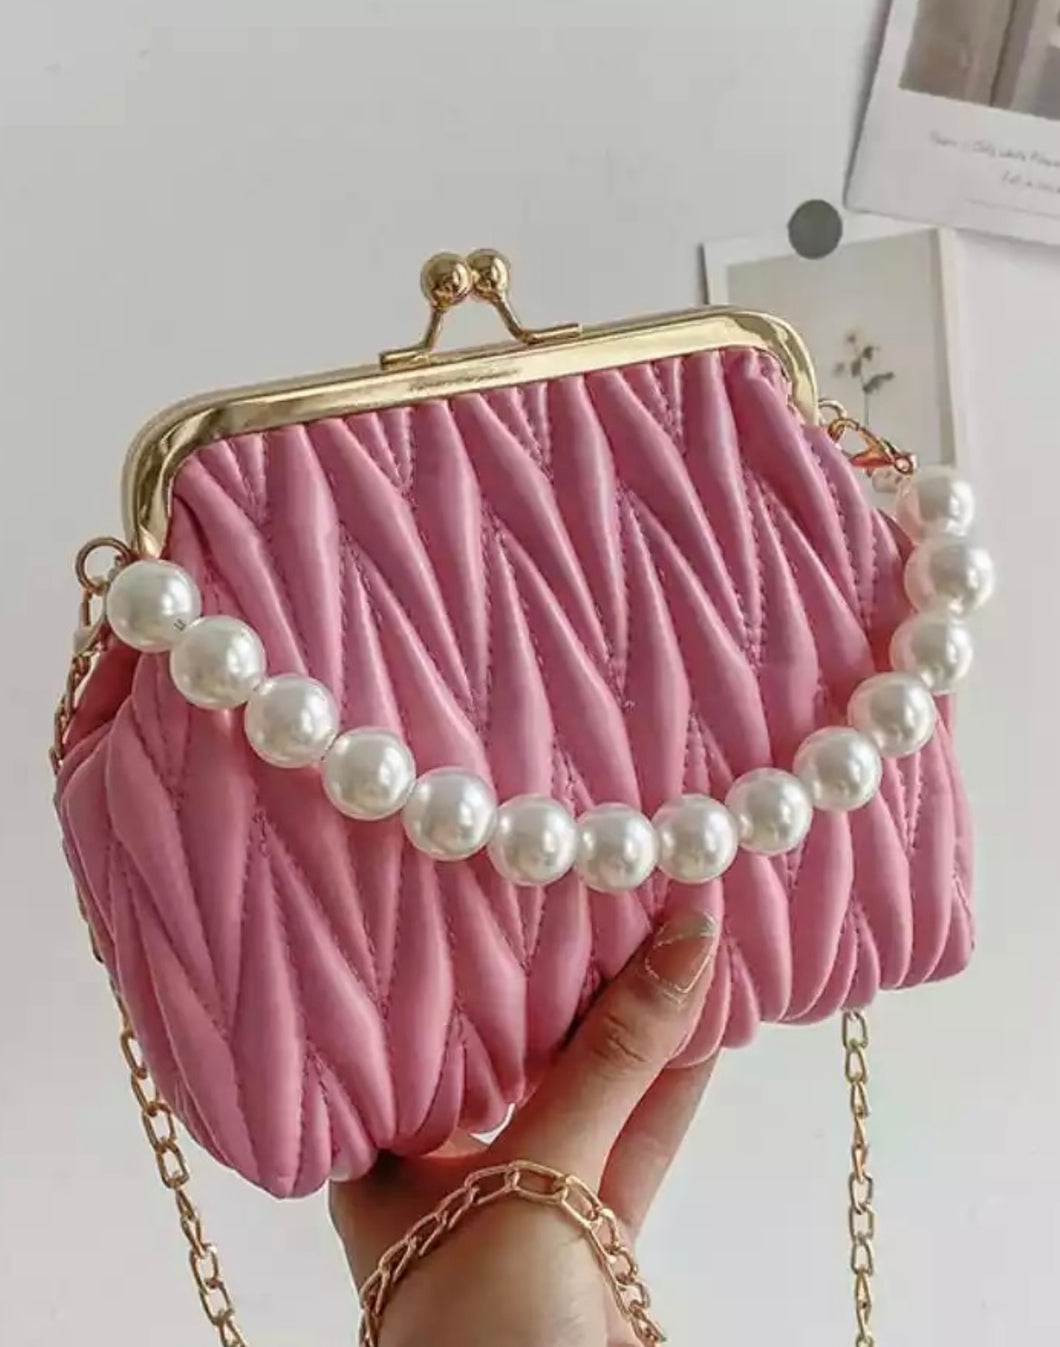 Pearl Princess Bag in Pink